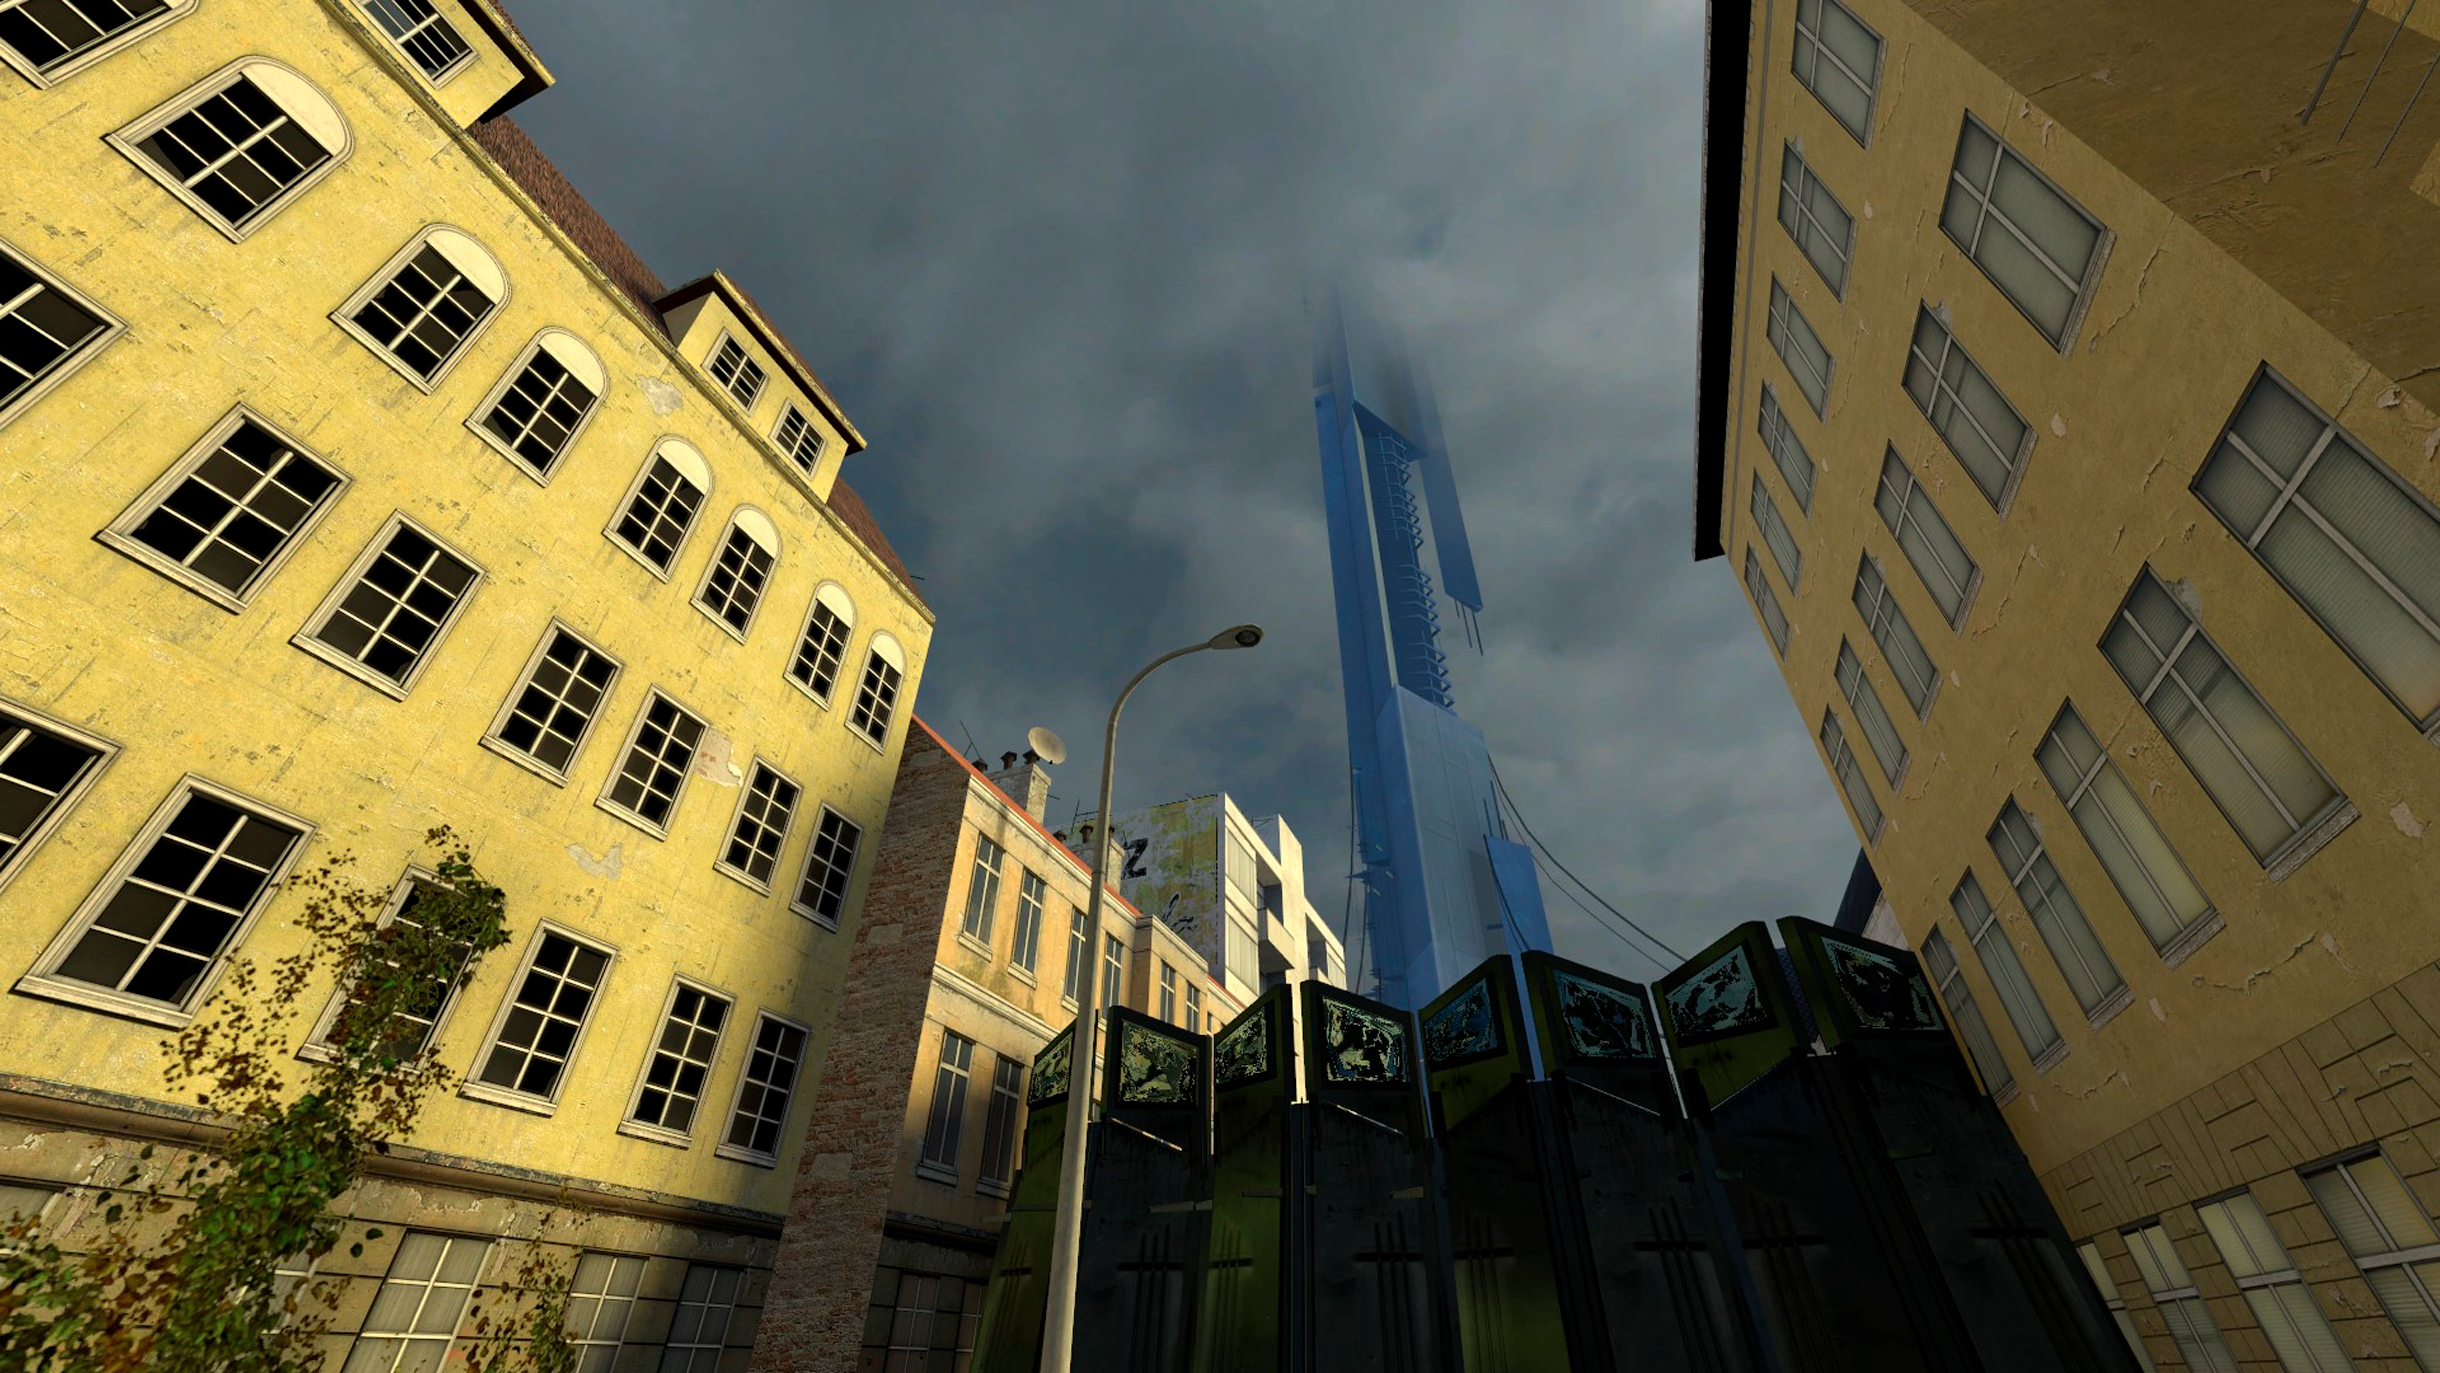 Сити-17 — настоящий город контрастов. Тут рядом с советскими многоэтажками возвышаются инопланетные постройки. Кадр: Valve Corporation